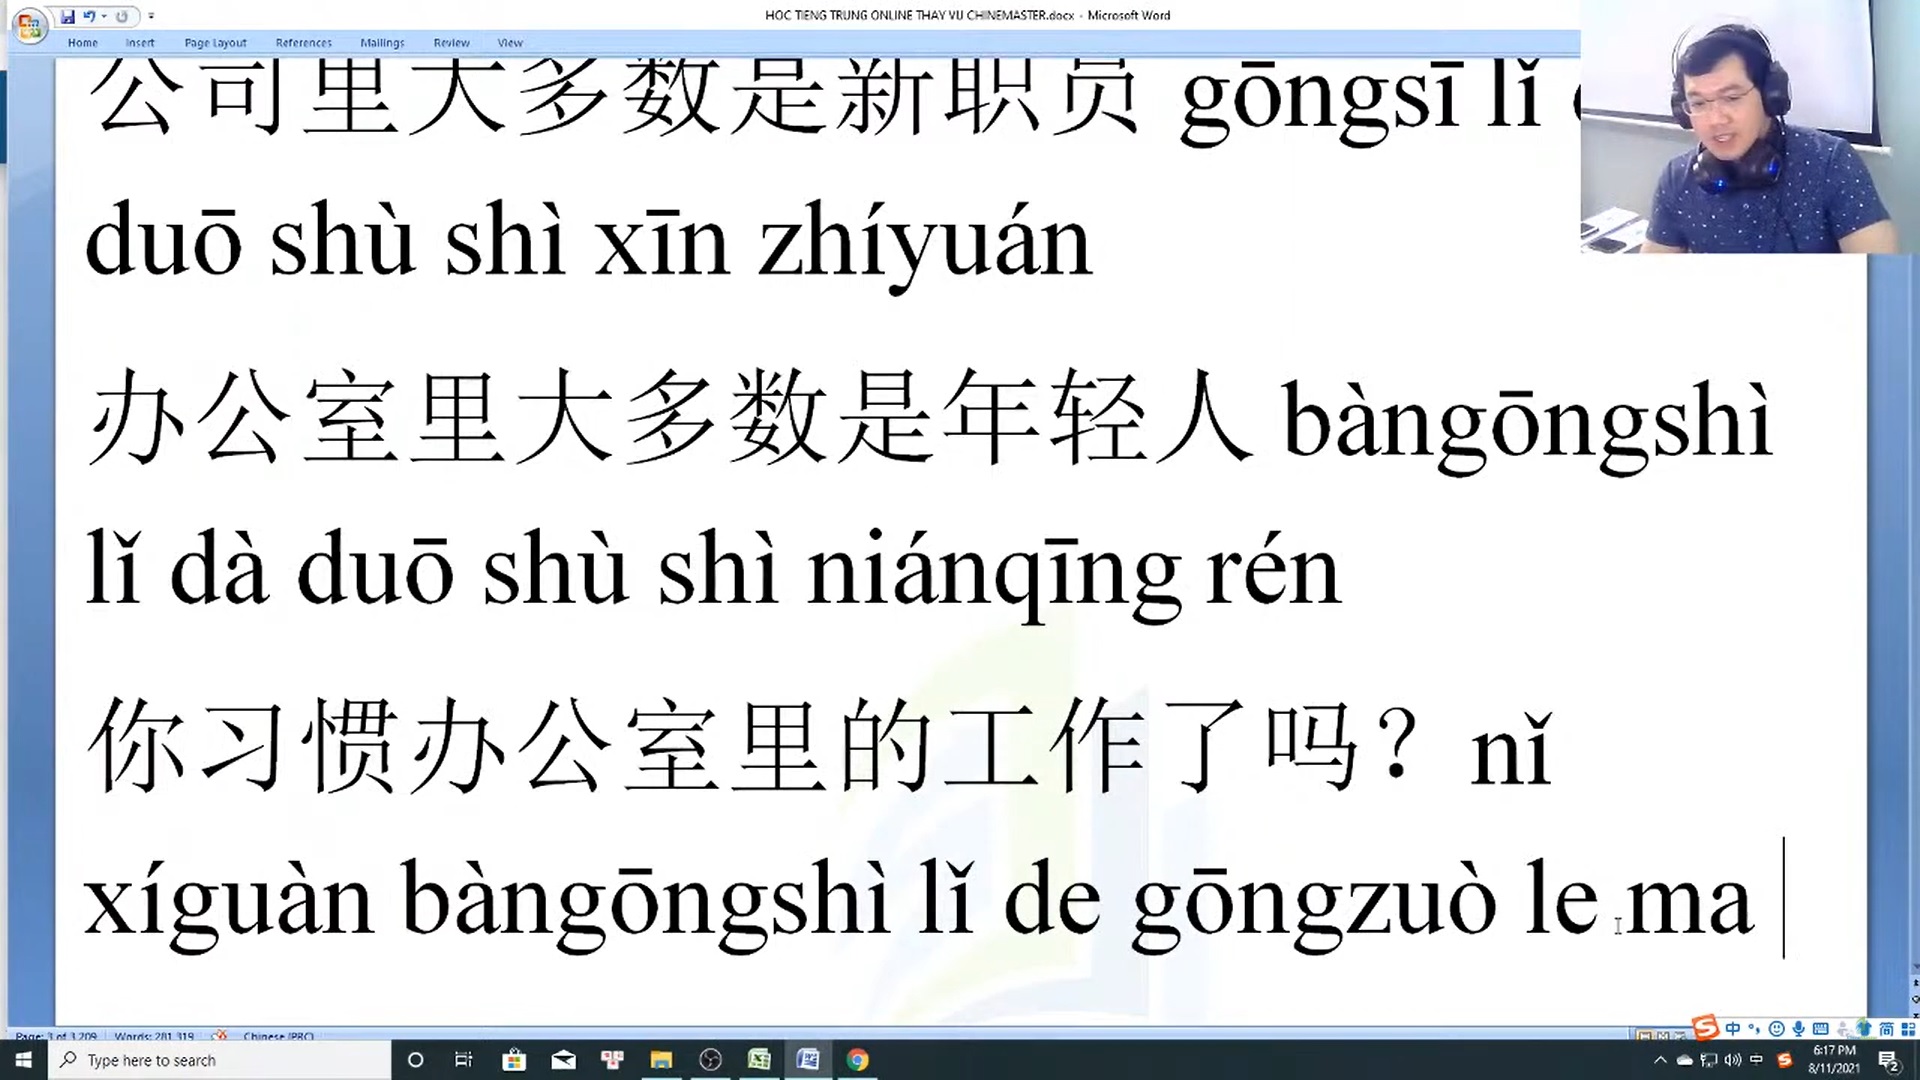 Giáo trình tiếng Trung thương mại cấp tốc thuật ngữ cơ bản